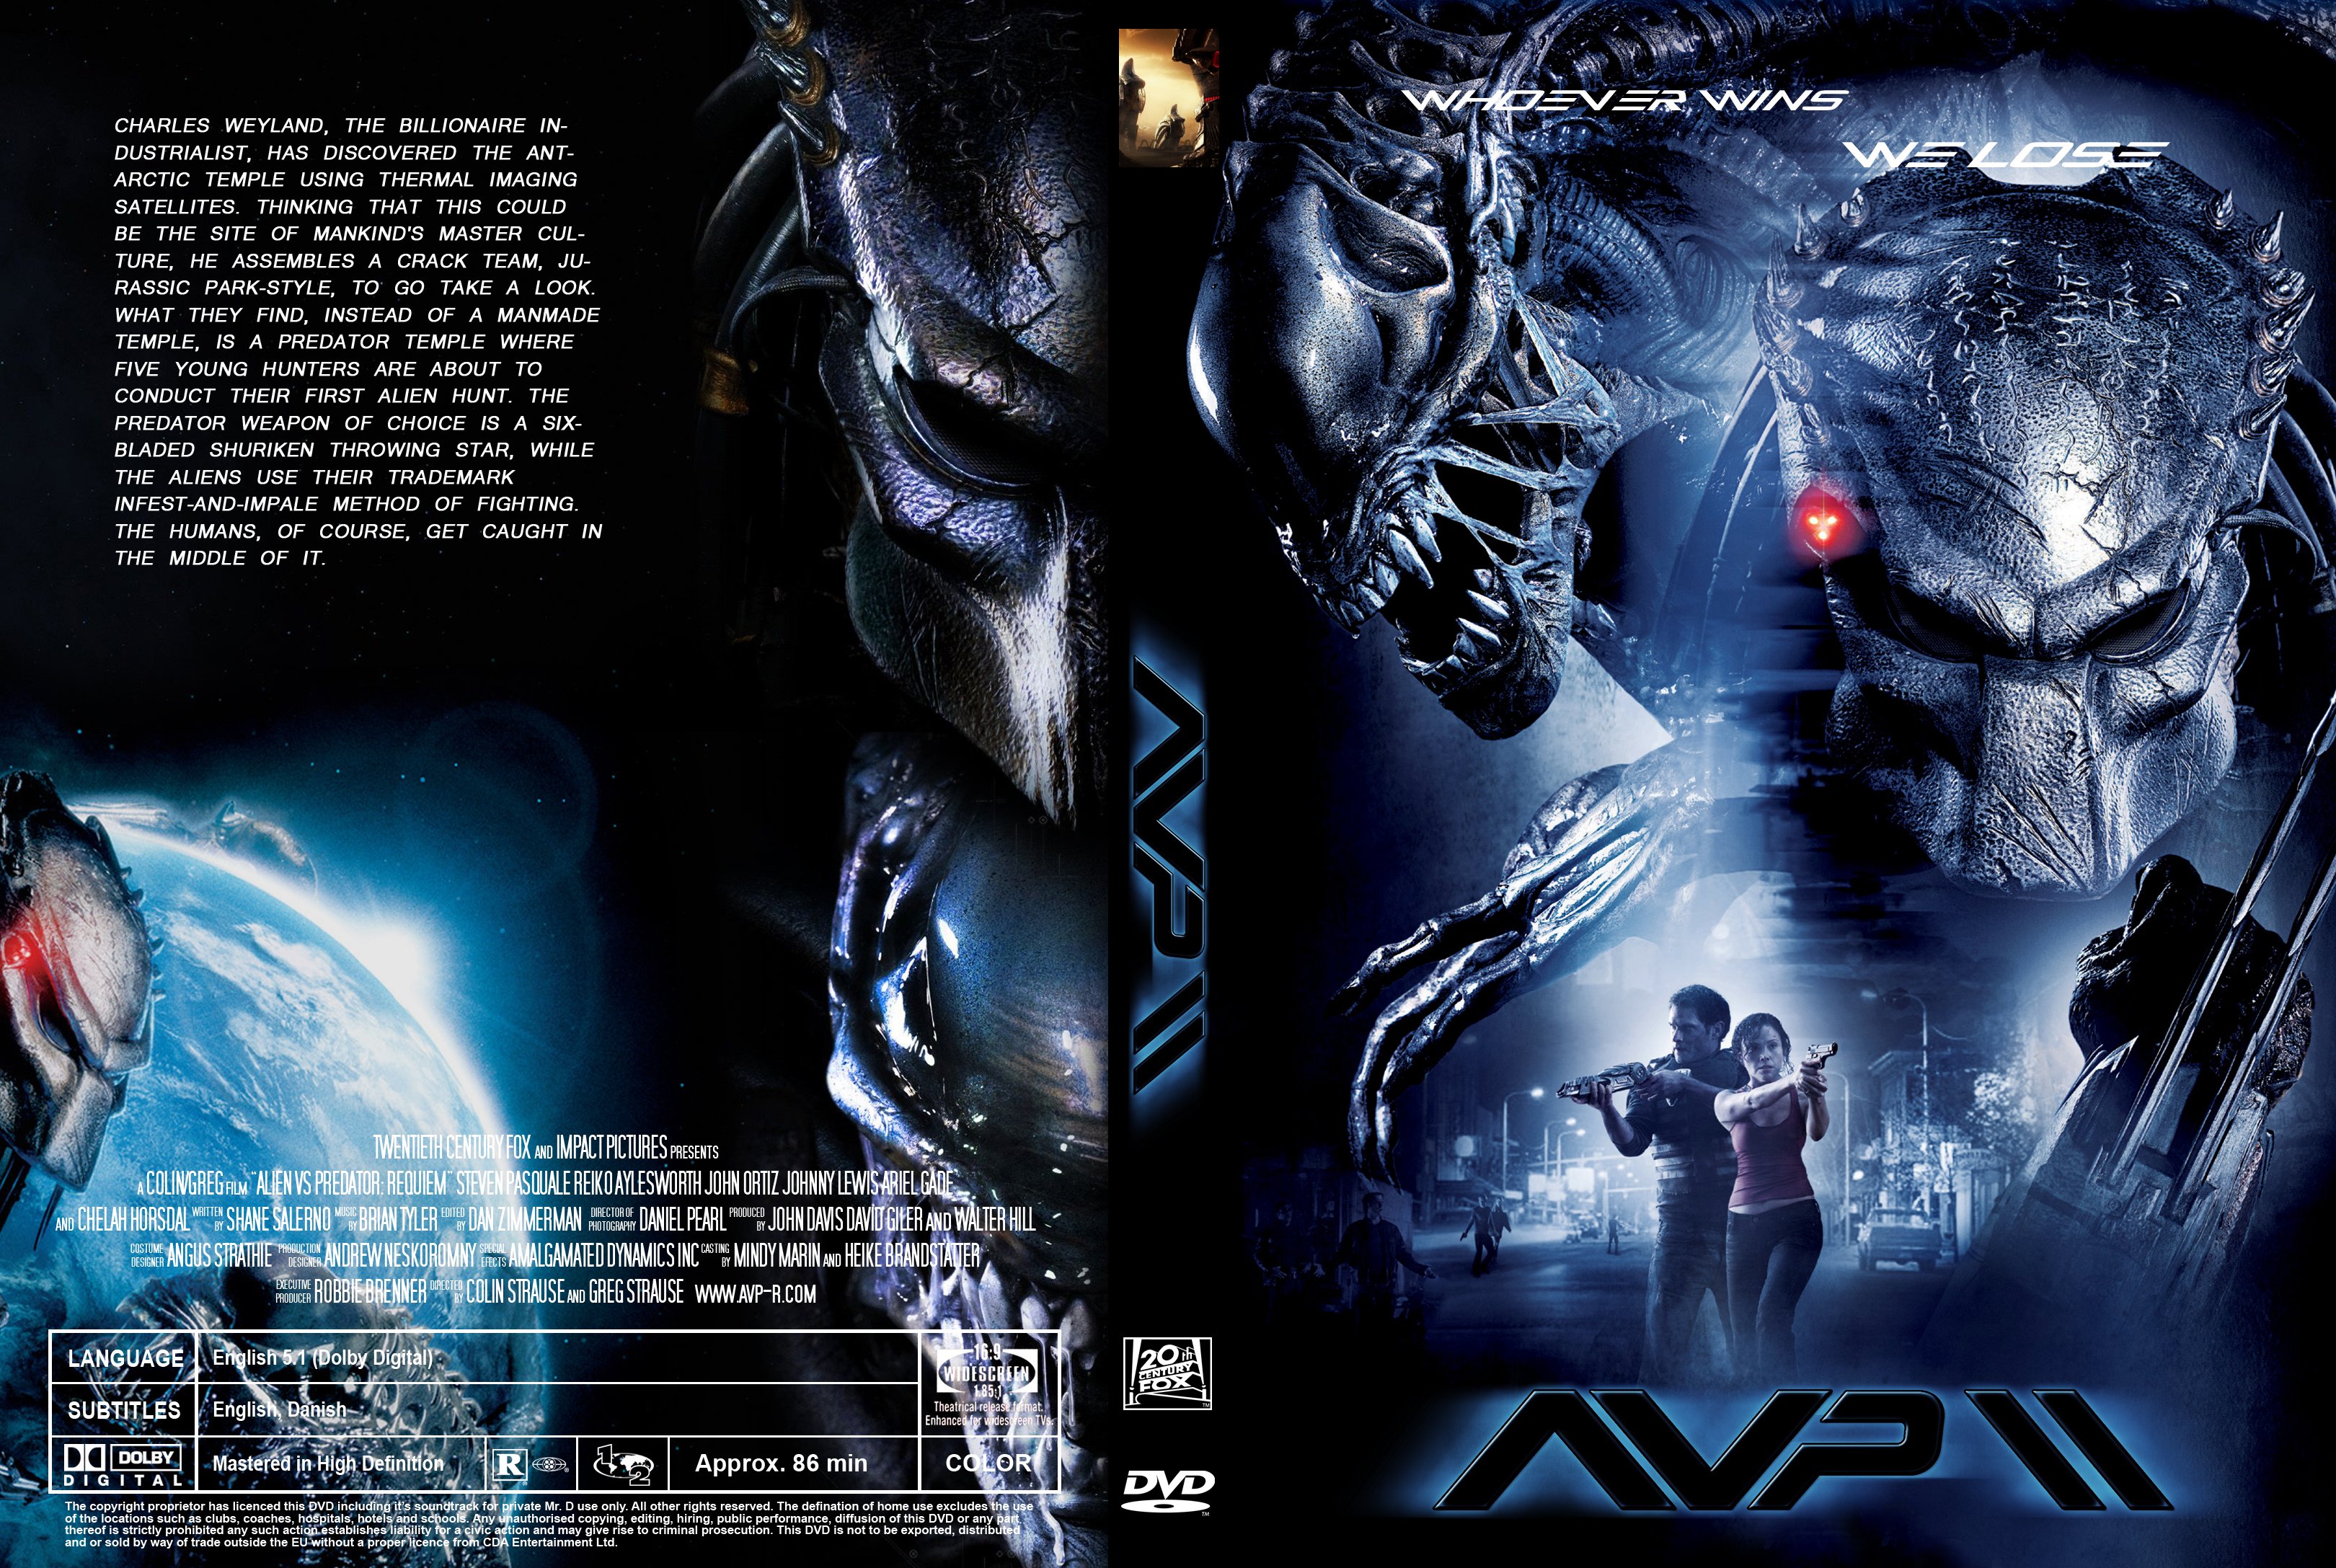 download alien vs predator 2 requiem